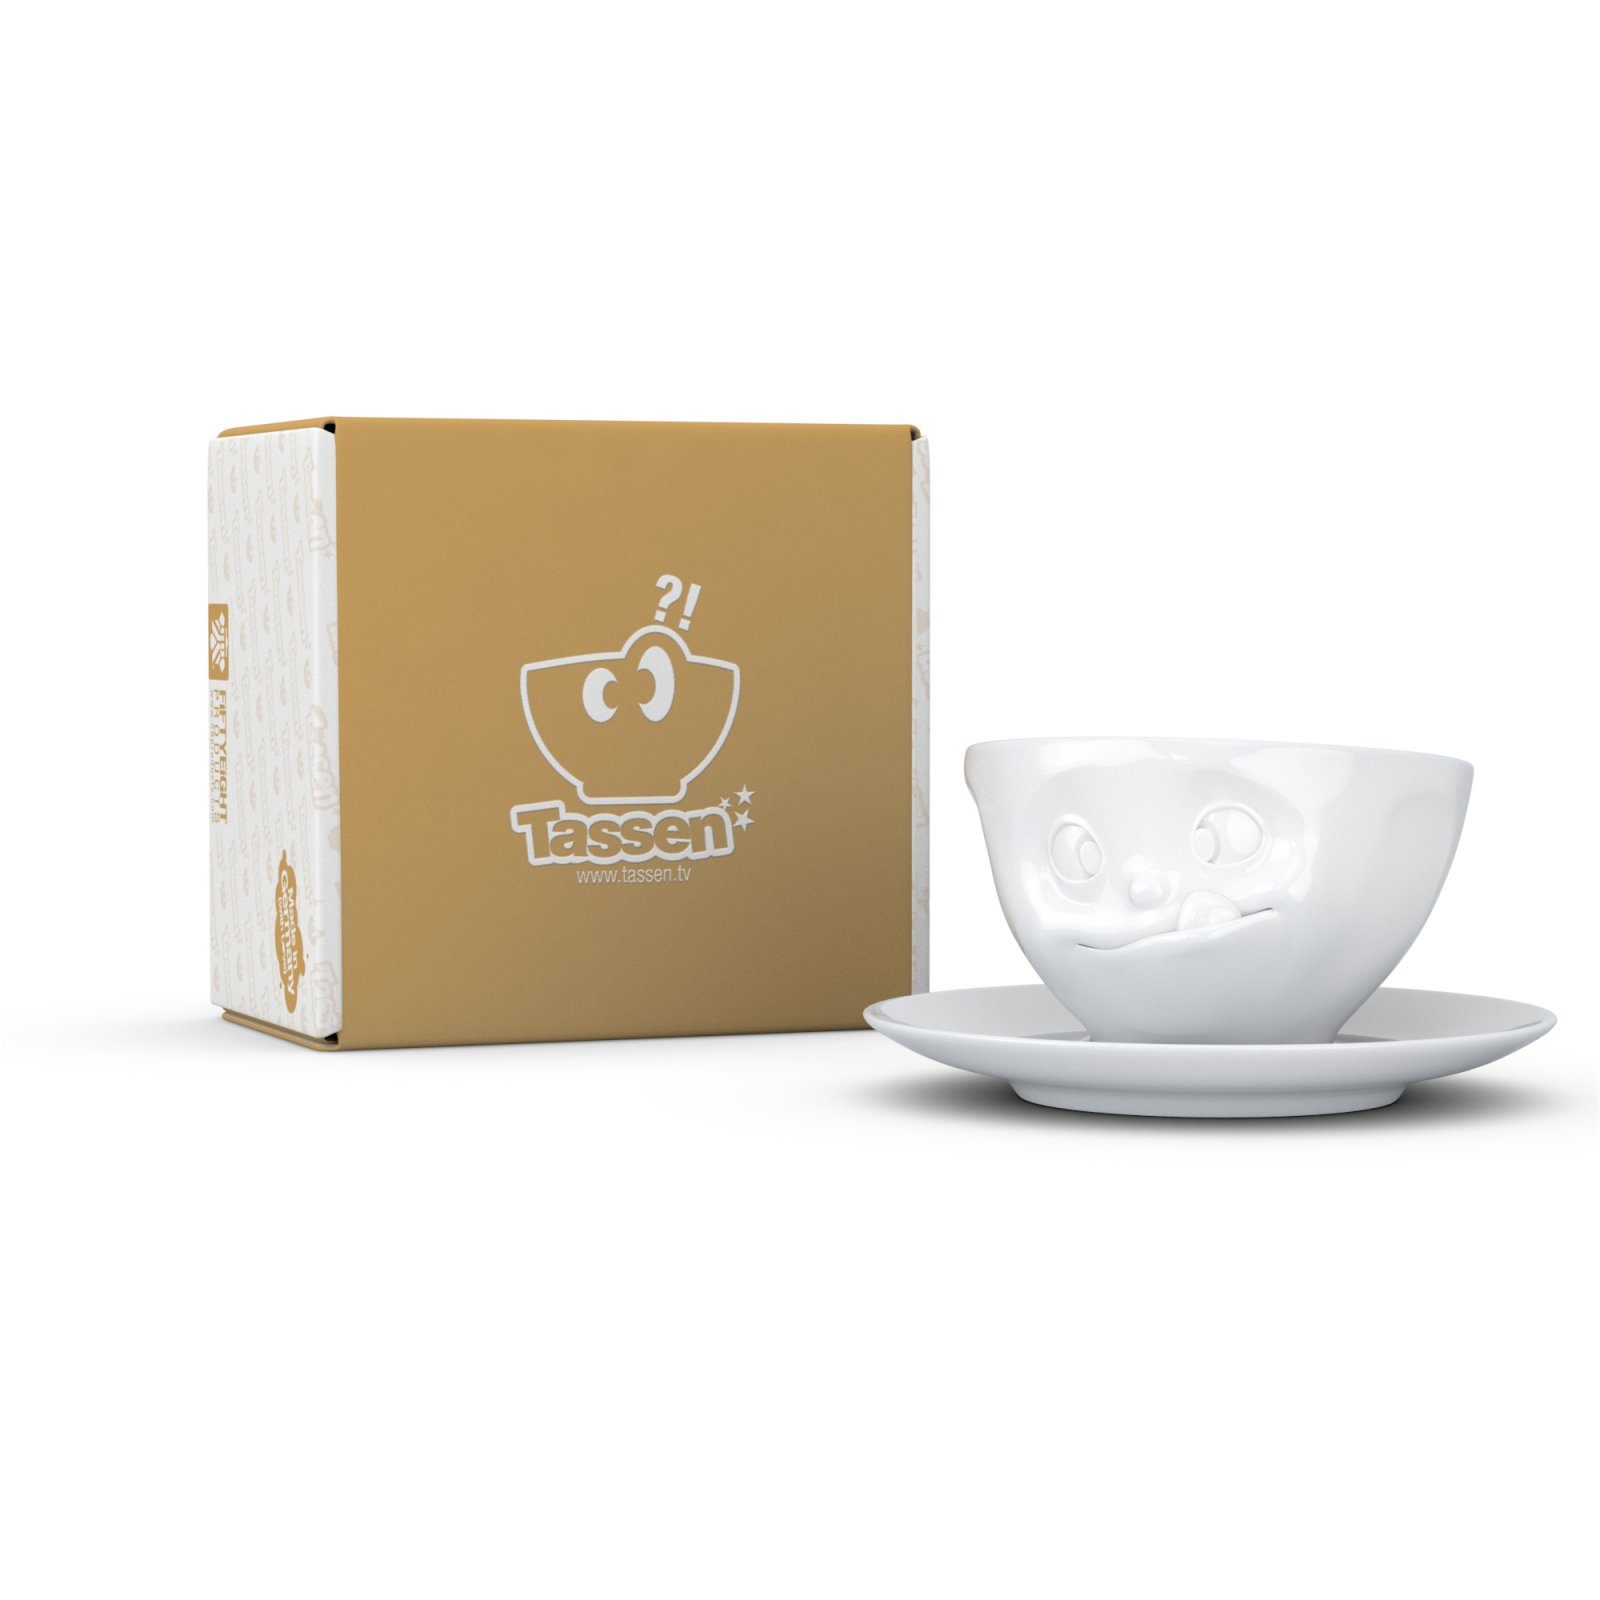 FIFTYEIGHT PRODUCTS Tasse Tasse Lecker weiß - 200 ml - Kaffeetasse Weiß